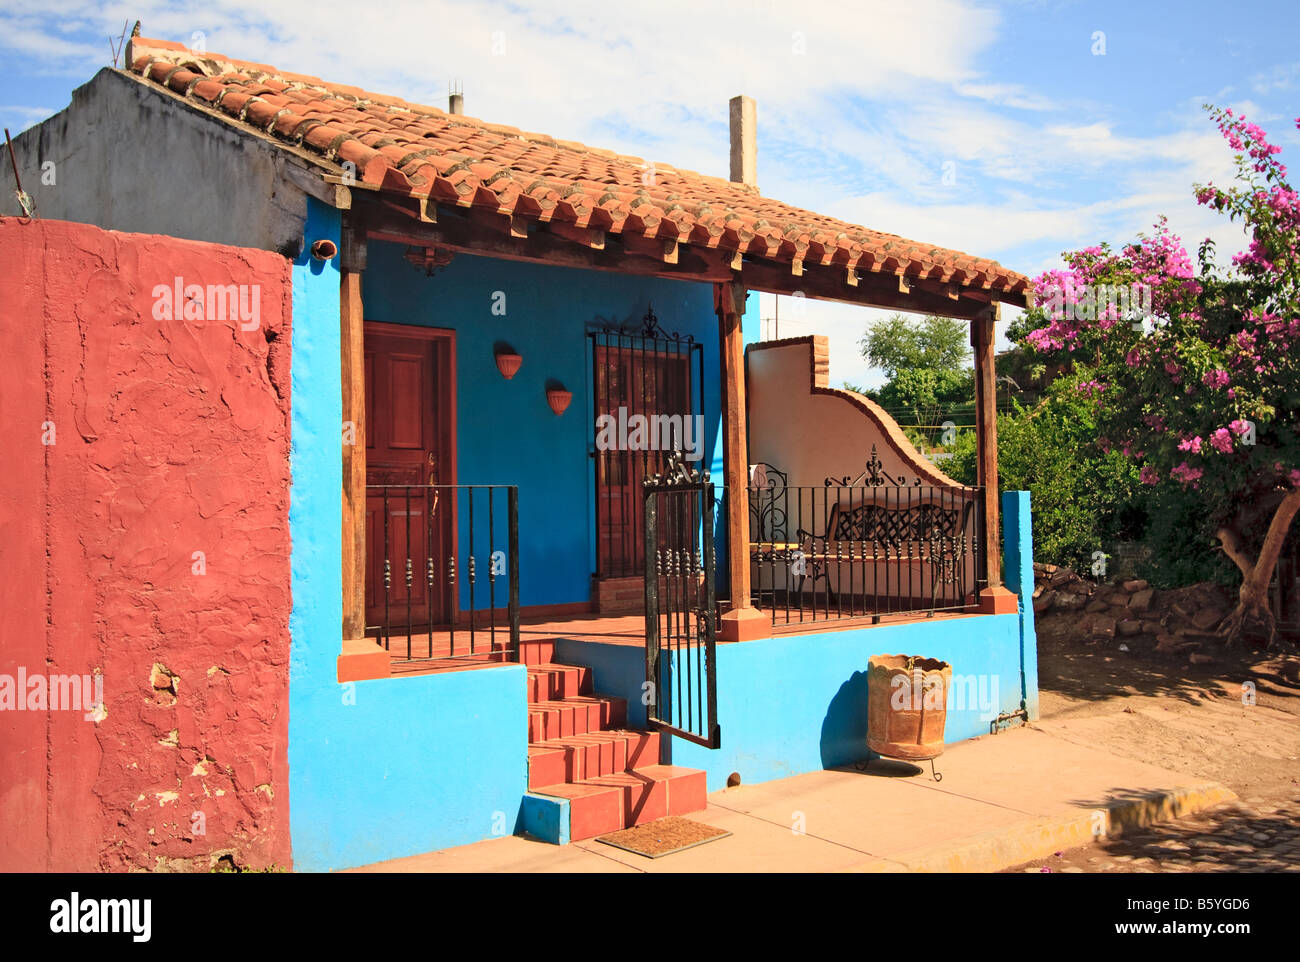 Maison peinte aux couleurs vives au Mexique Banque D'Images